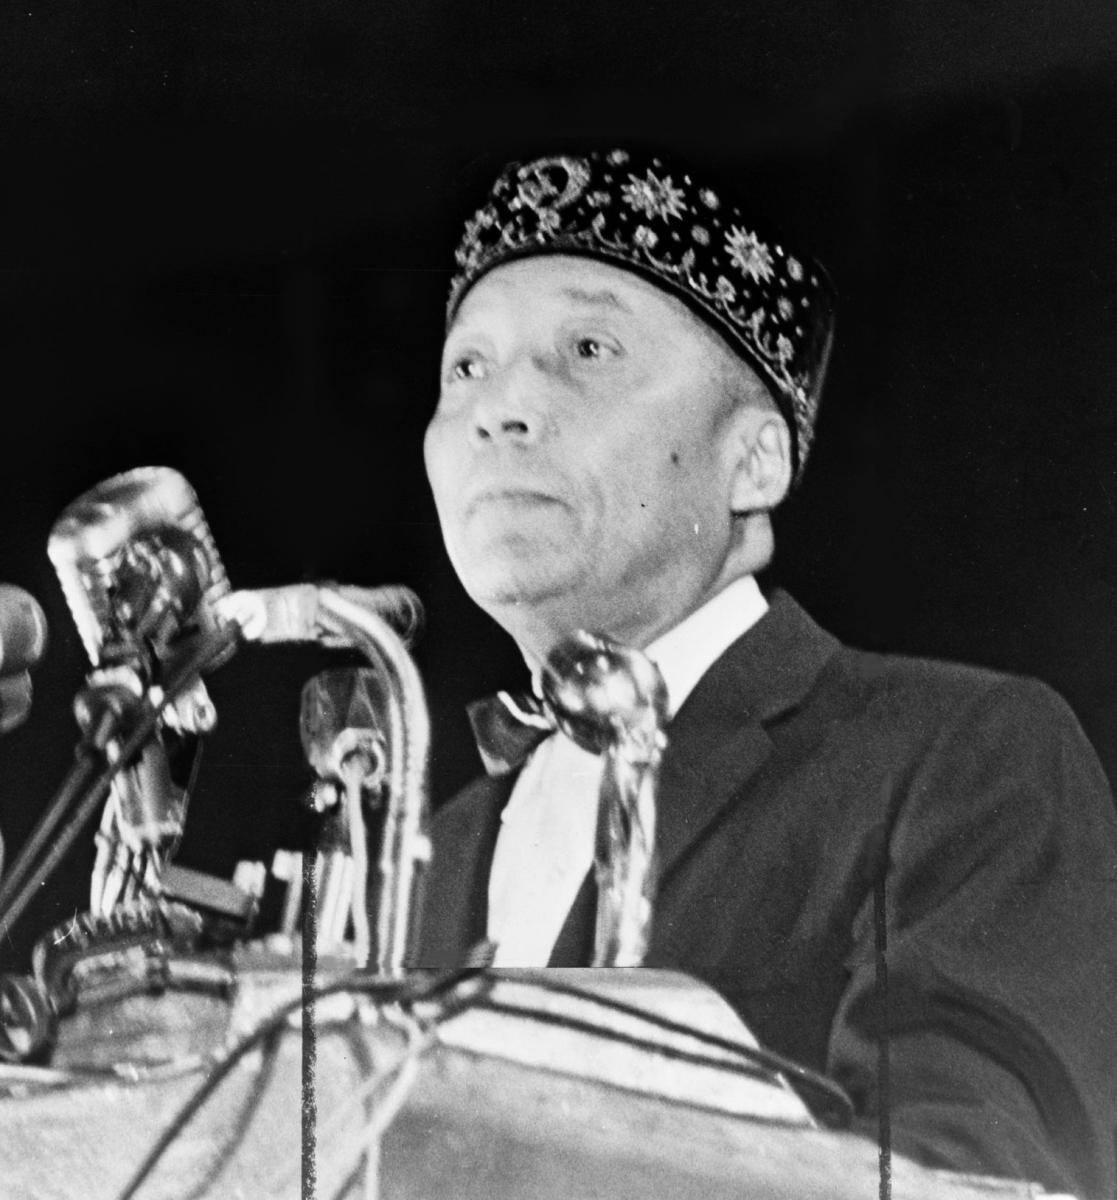 Muhammad speaking at a podium